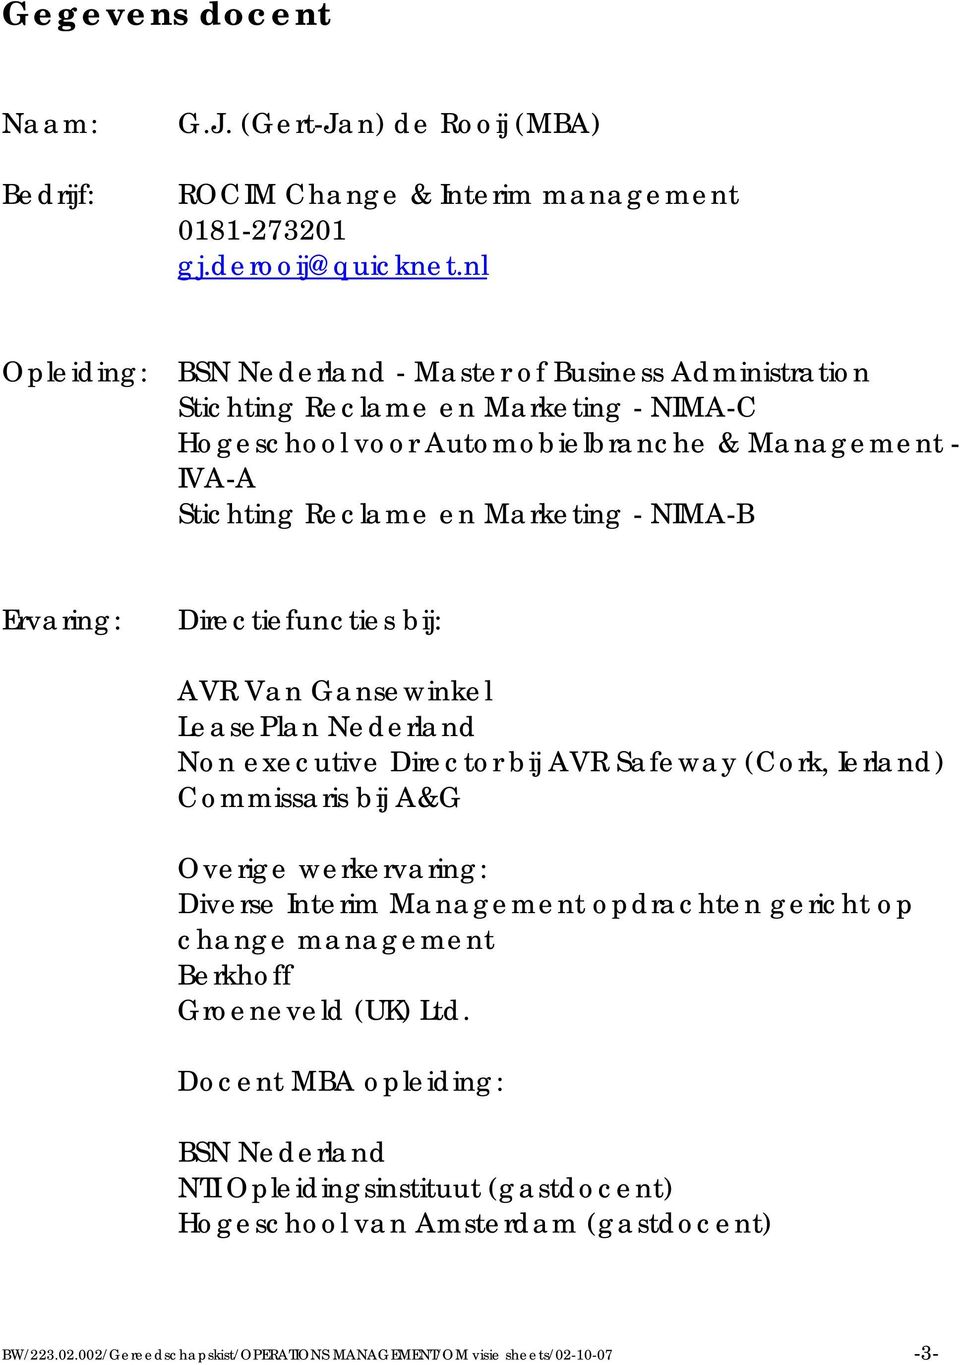 NIMA-B Ervaring: Directiefuncties bij: AVR Van Gansewinkel LeasePlan Nederland Non executive Director bij AVR Safeway (Cork, Ierland) Commissaris bij A&G Overige werkervaring: Diverse Interim